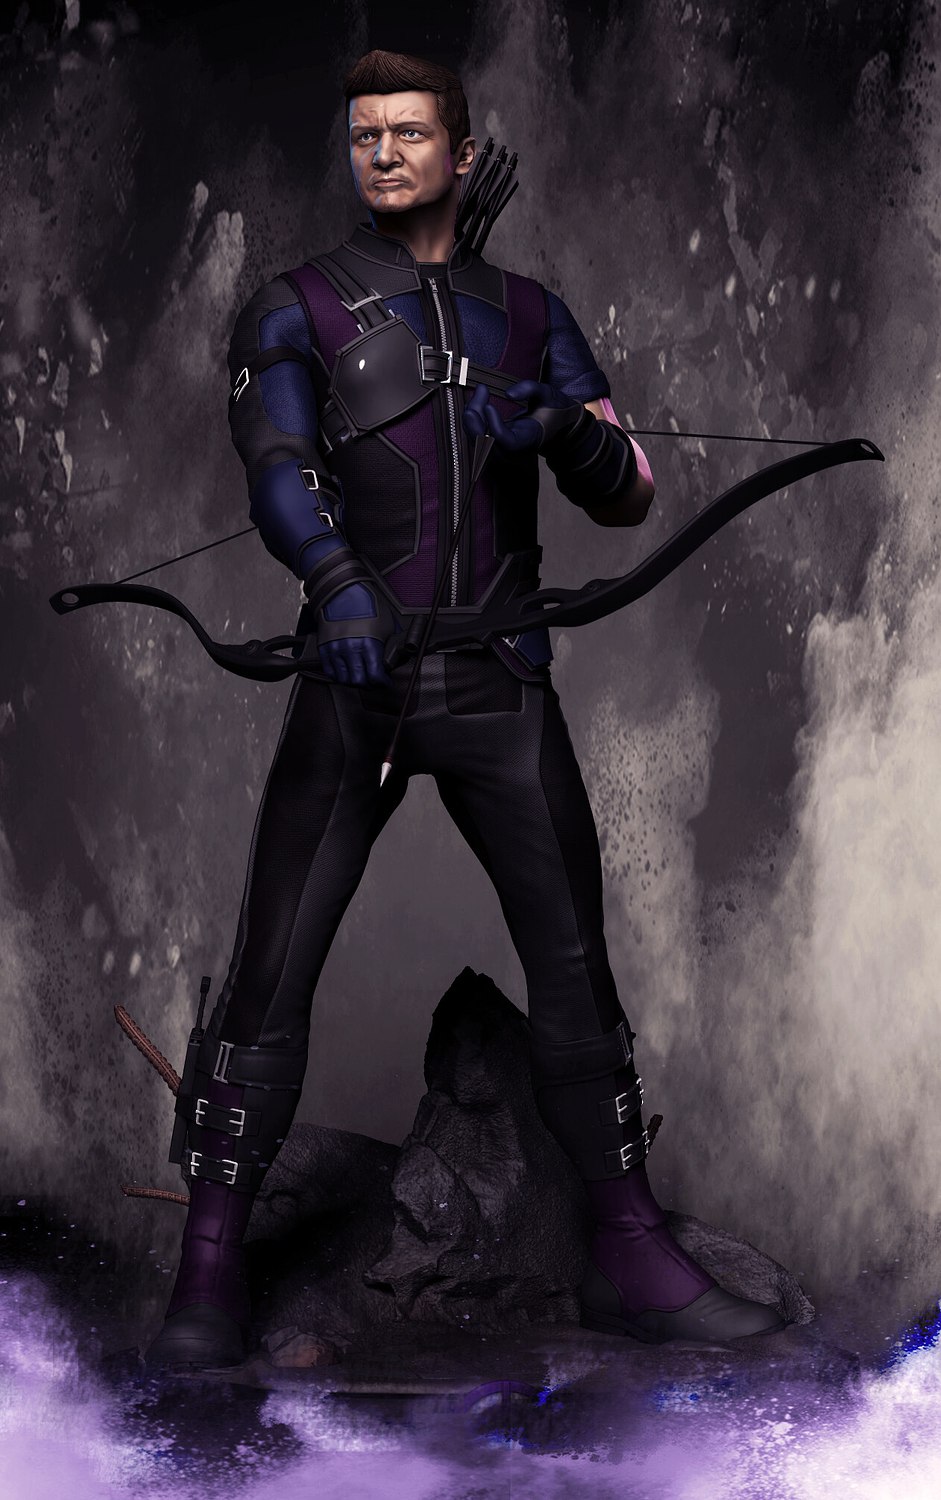 Hawkeye Clint Barton from Marvel